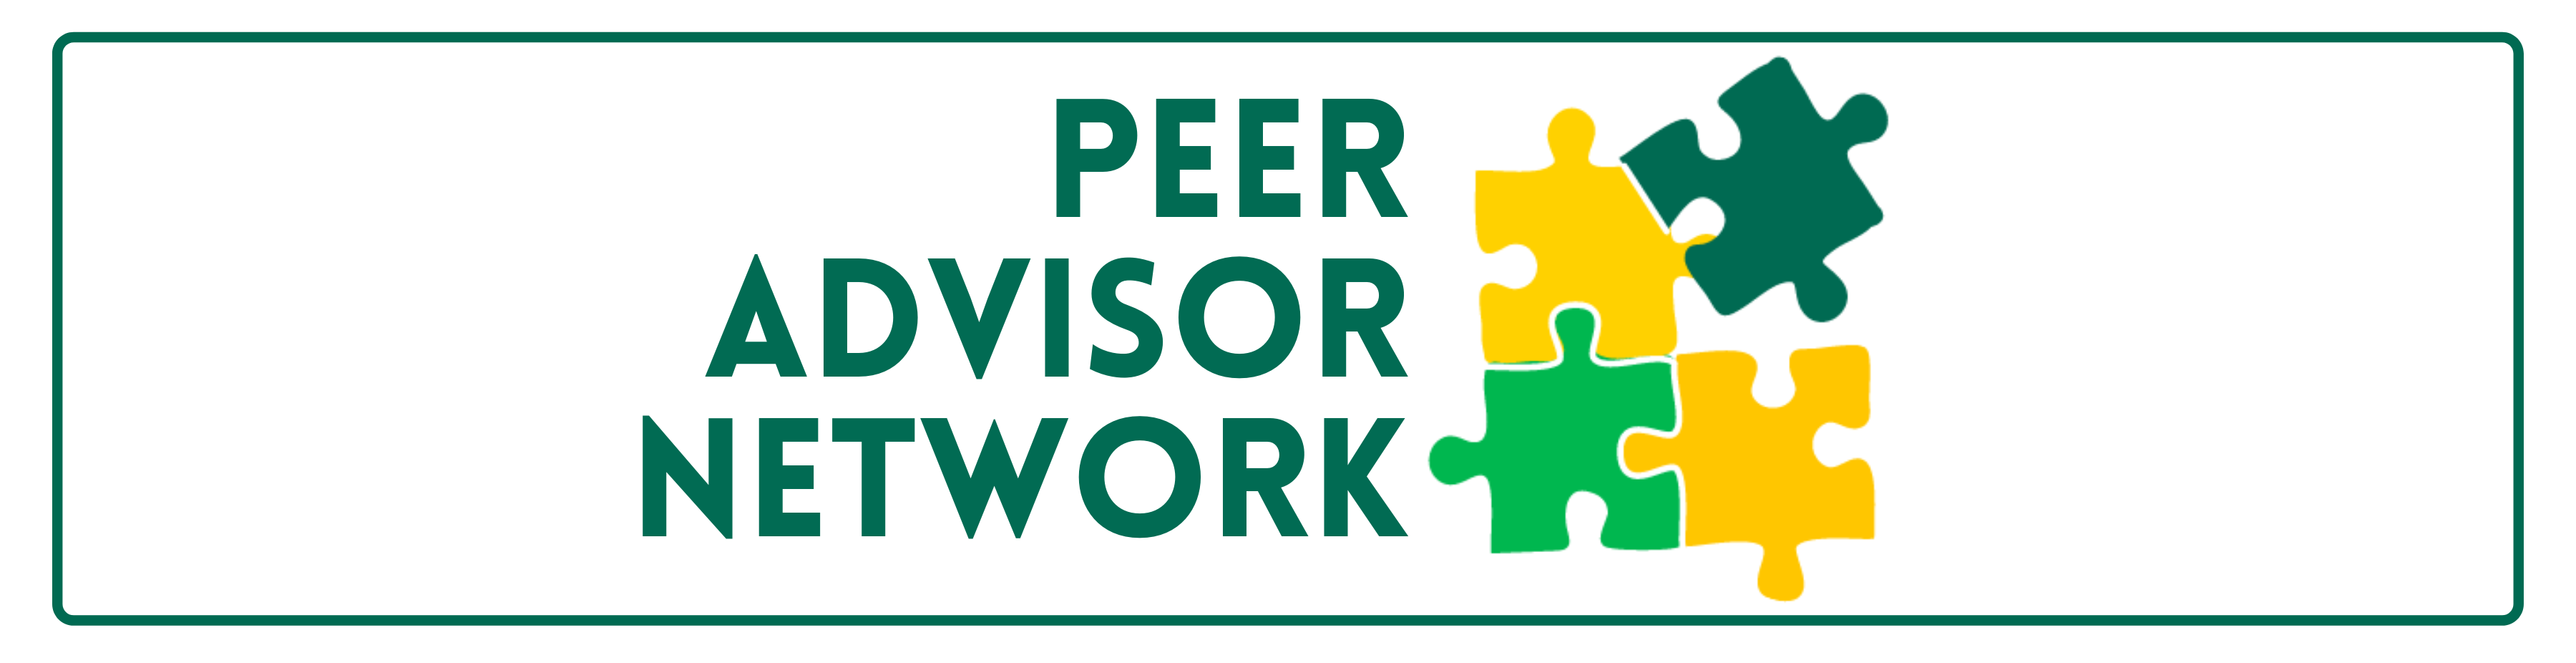 Peer Advisor Network